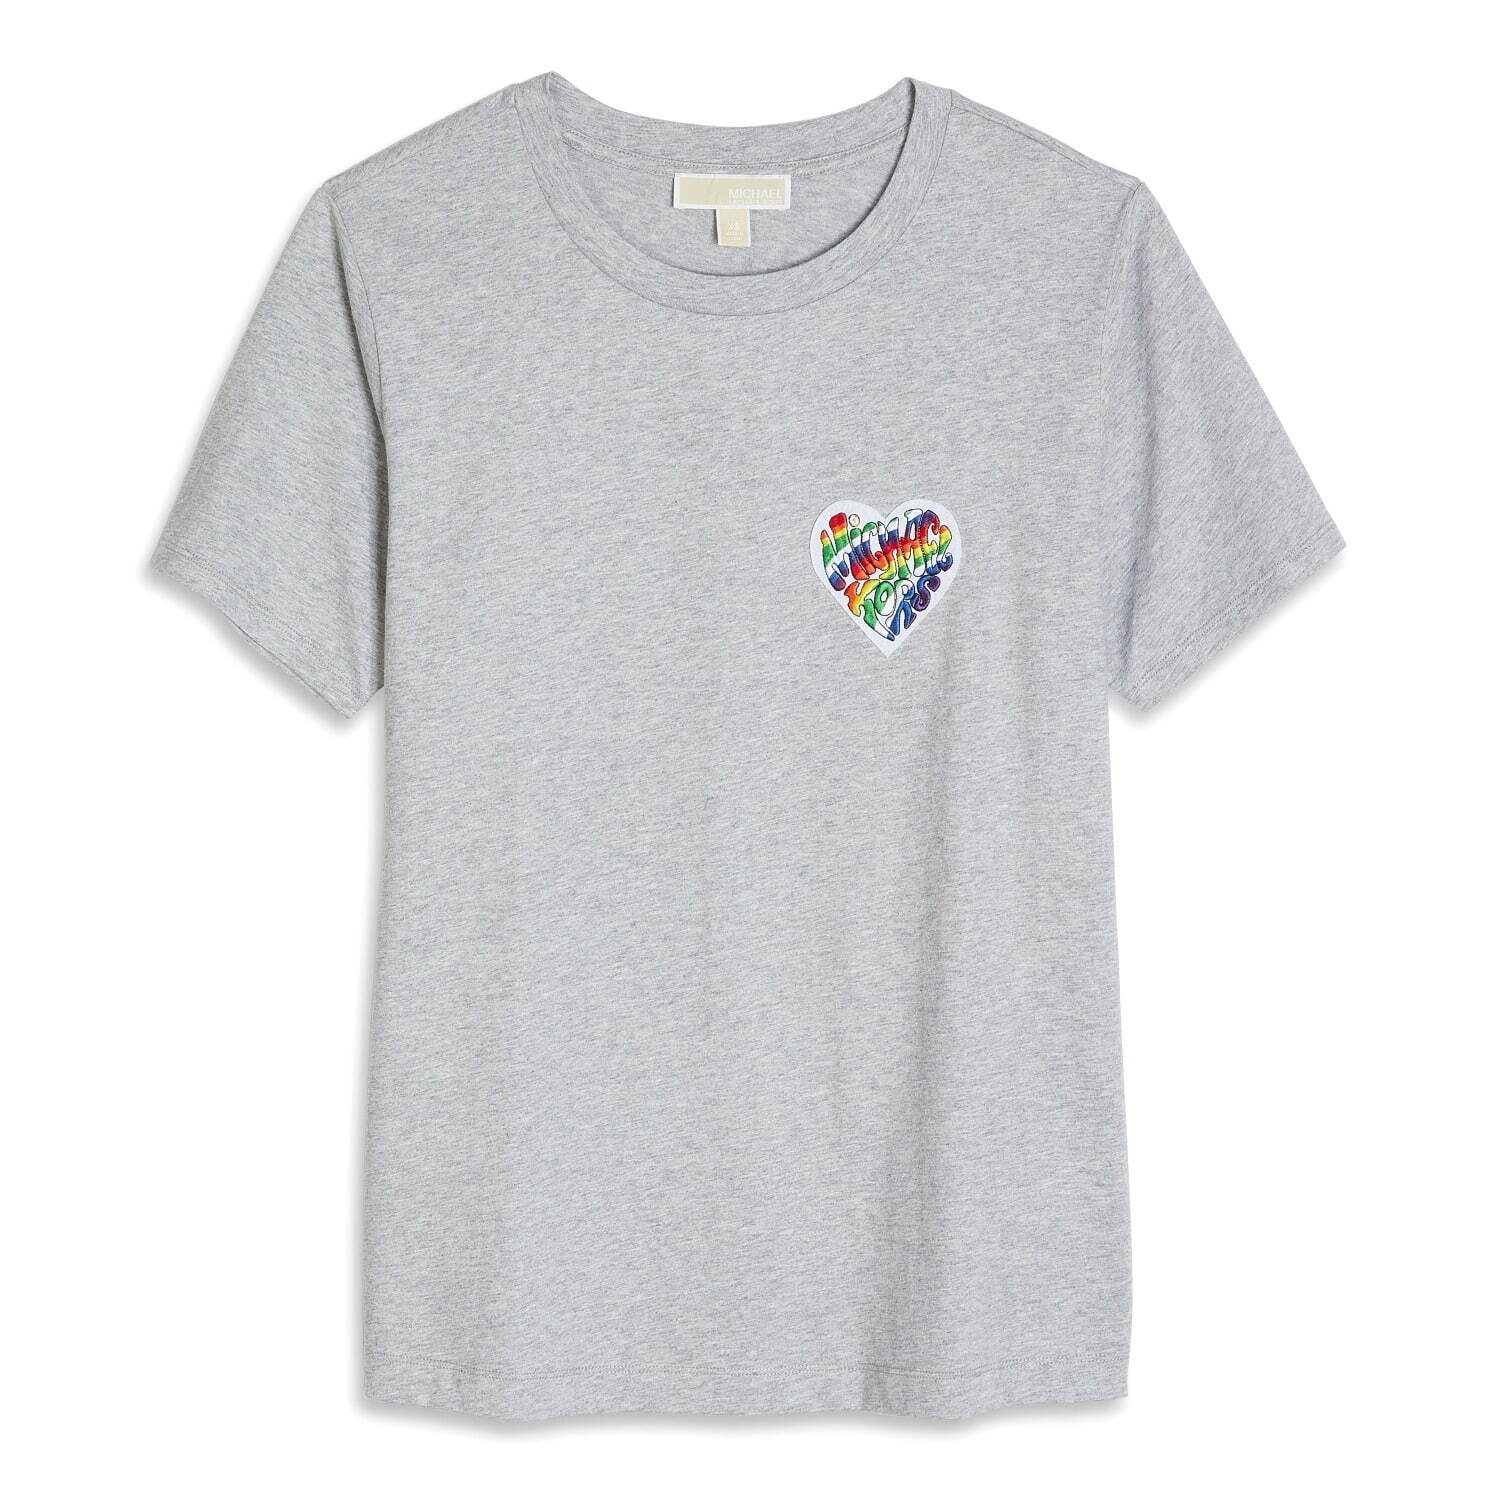 ユニセックス レインボー バッジ Tシャツ 13,200円(税込)